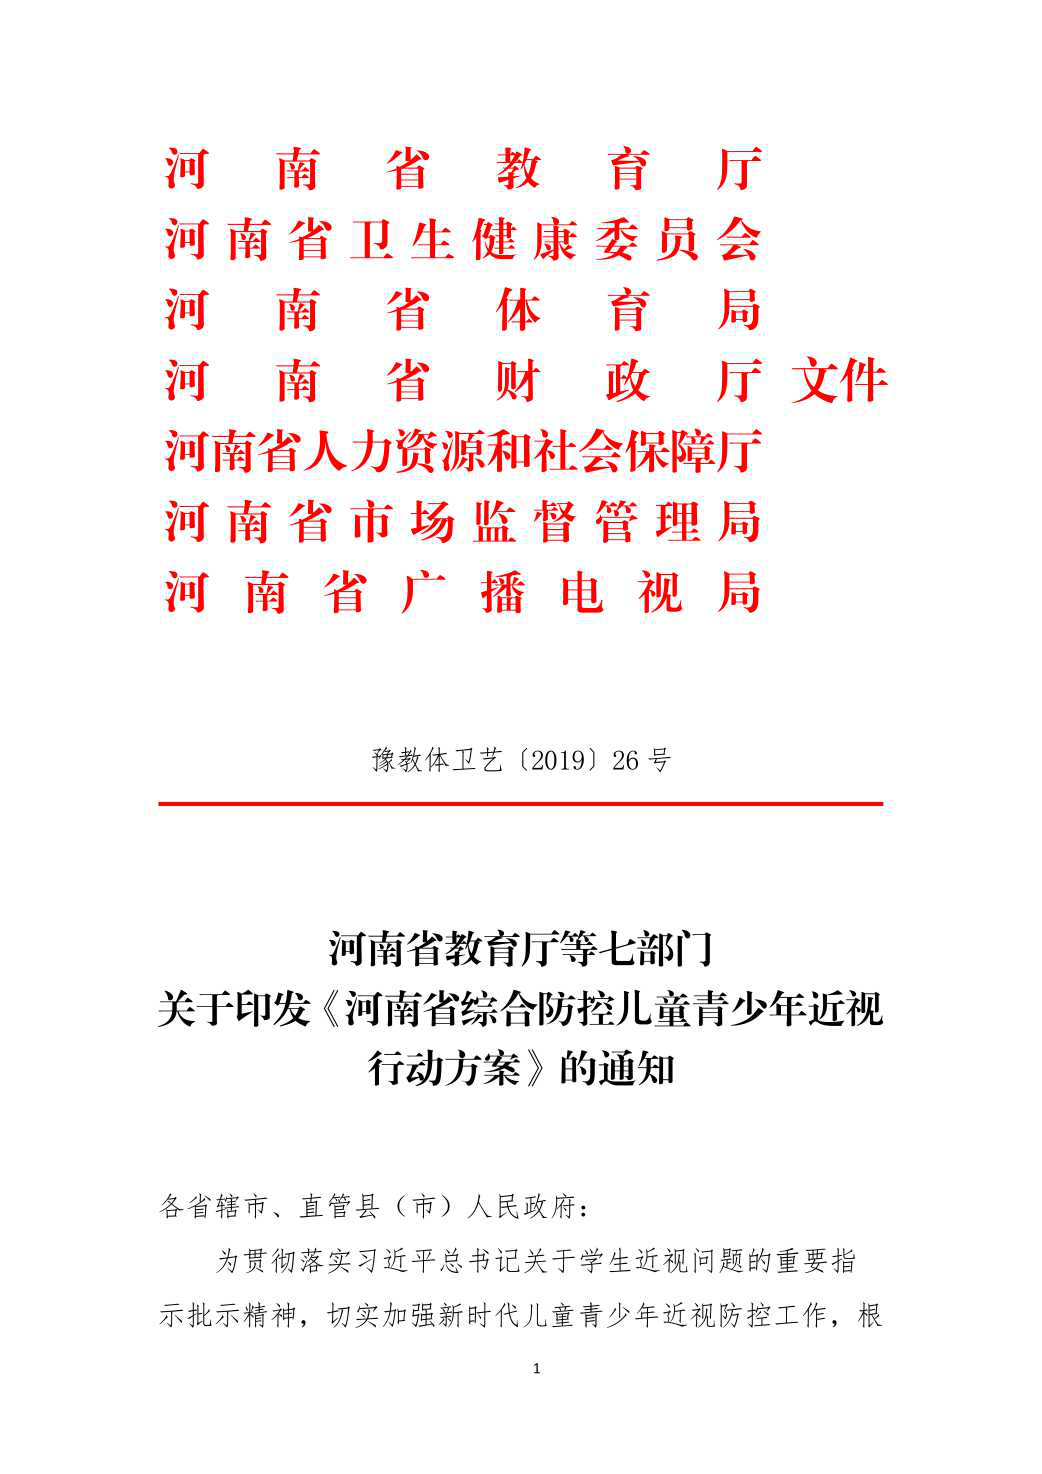 河南省教育厅等七部门关于印发《河南省综合防控儿童青少年近视行动方案》的通知